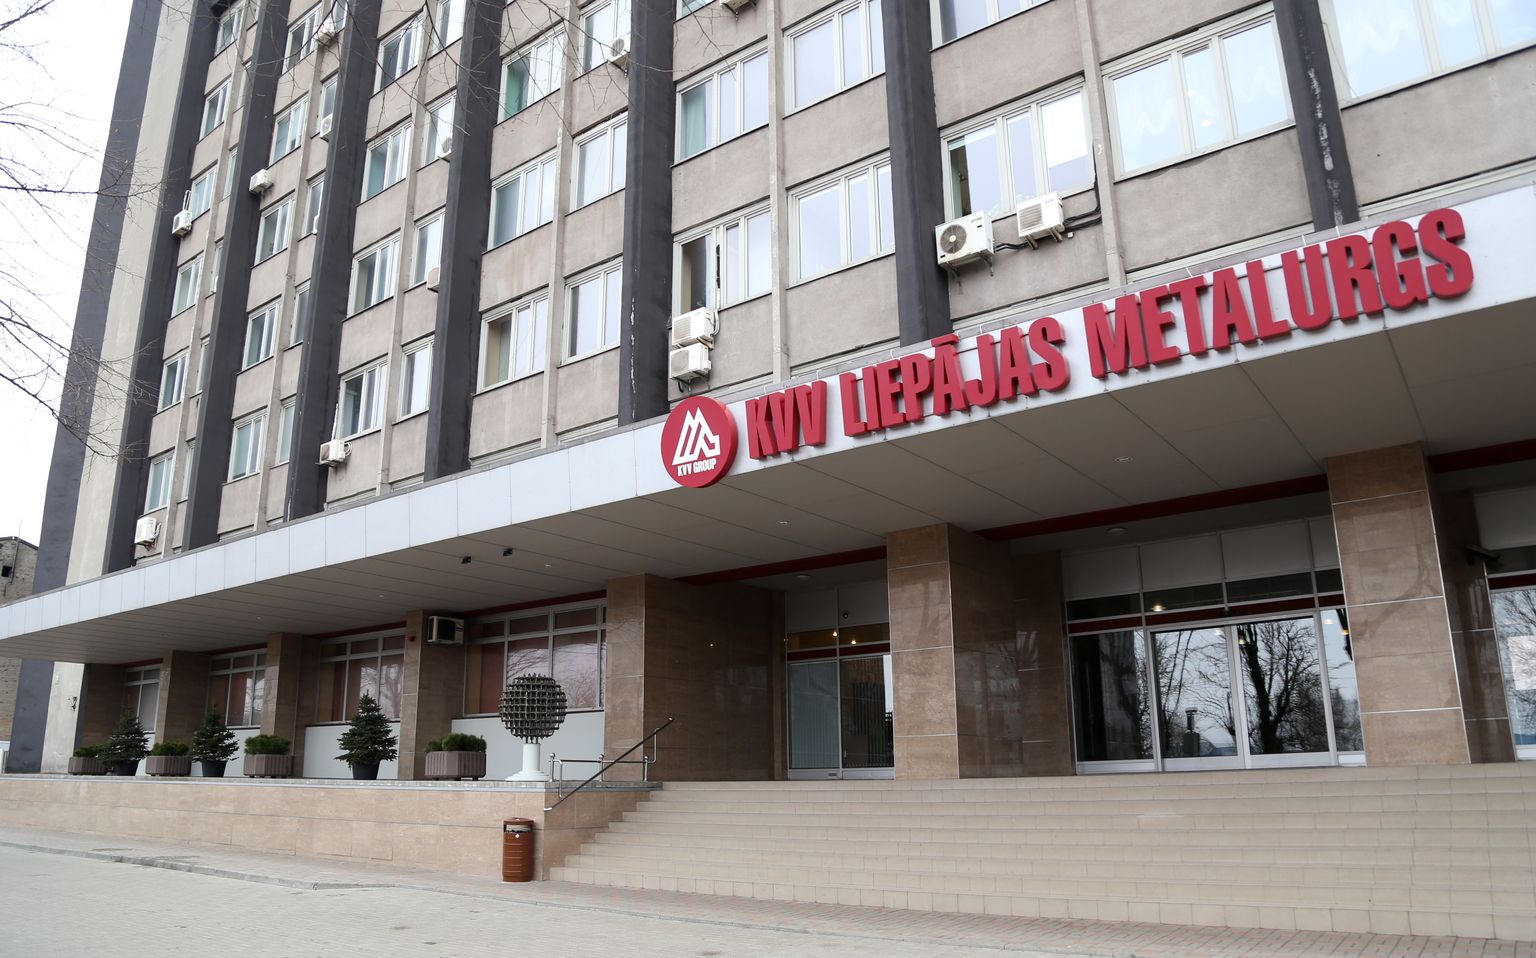 Baltijā lielākā metalurģijas rūpnīca AS "KVV Liepājas metalurgs".